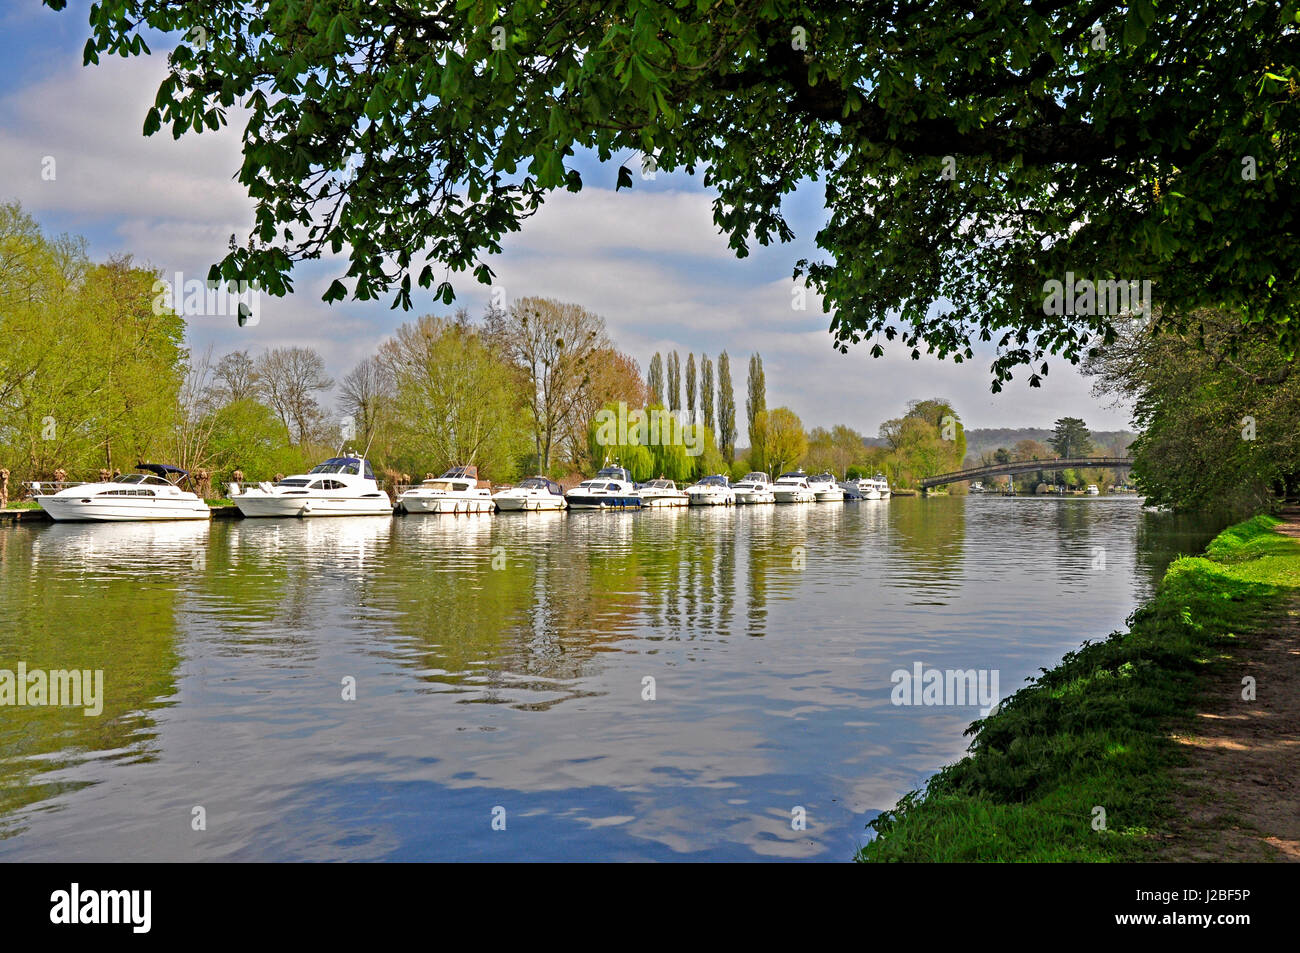 Vista fiume ormeggiate incrociatori -riflessioni nel fiume- incorniciata dagli alberi - Luce solare - cielo blu - Thames Path - Hurley Foto Stock